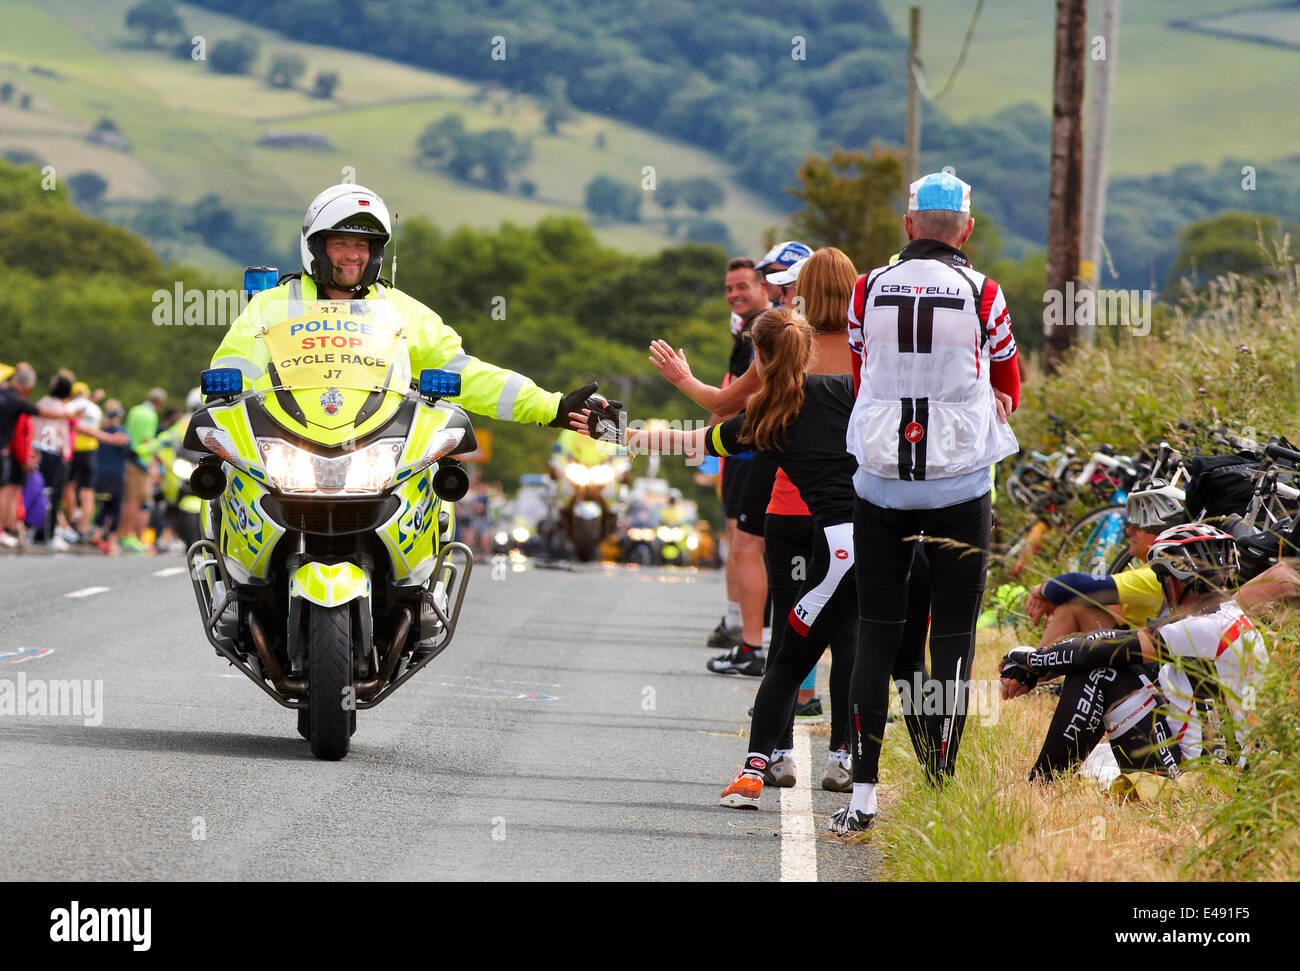 Addingham, Yorkshire, Reino Unido. El 6 de julio de 2014. Un sonriente policía motociclista altos fives esperando a los espectadores a lo largo de la ruta del Tour de Francia. Crédito: Christina Bollen/Alamy Live News Foto de stock